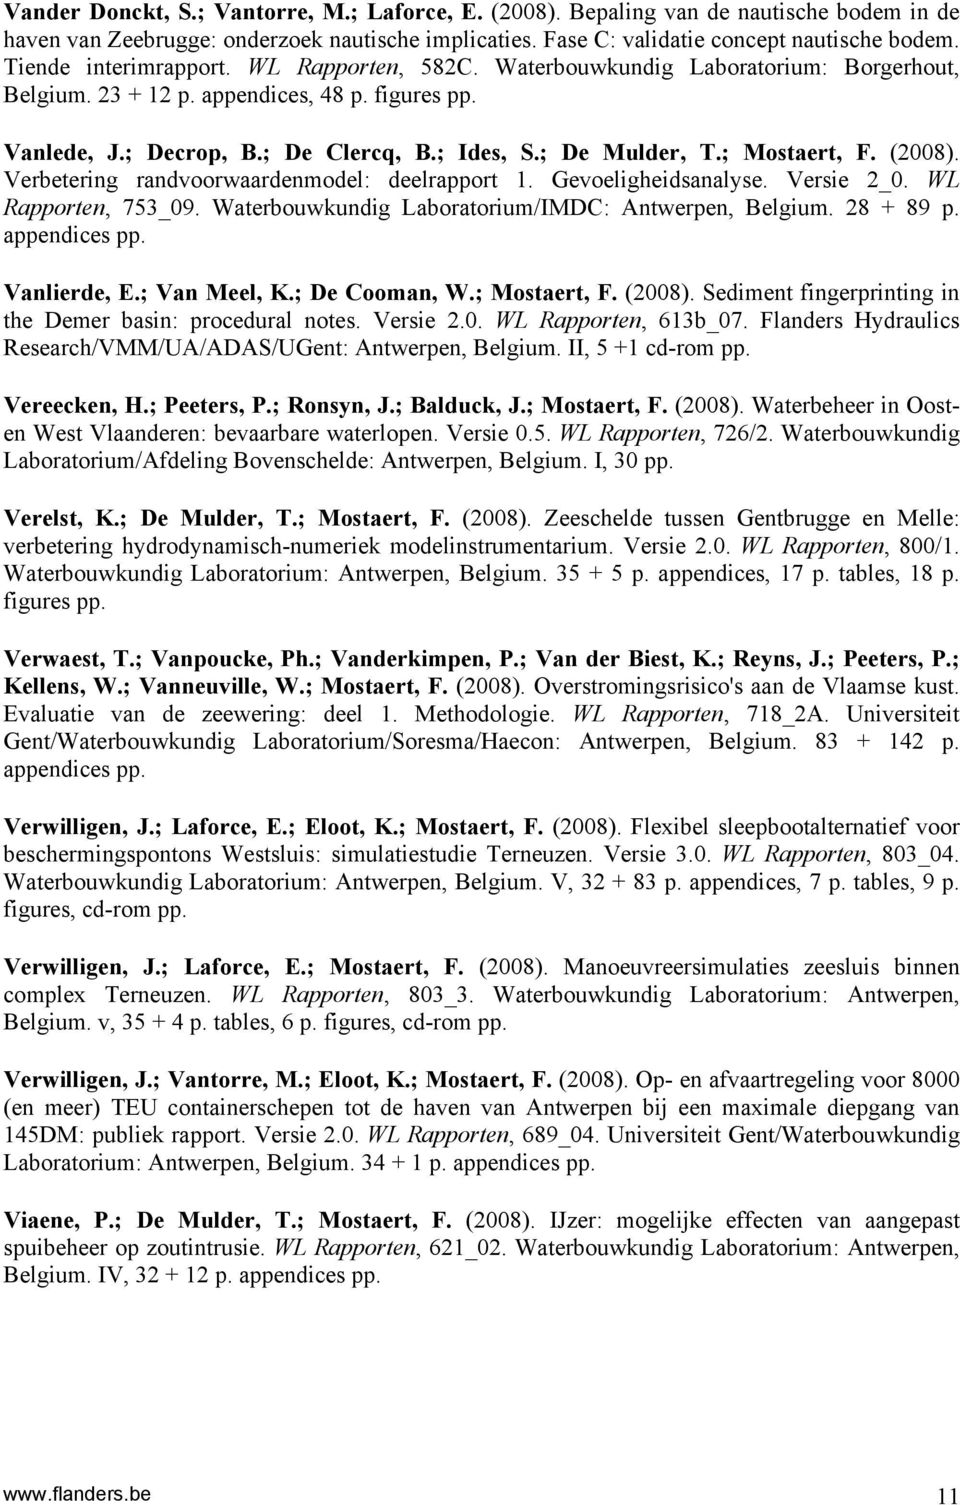 ; Mostaert, F. (2008). Verbetering randvoorwaardenmodel: deelrapport 1. Gevoeligheidsanalyse. Versie 2_0. WL Rapporten, 753_09. Waterbouwkundig Laboratorium/IMDC: Antwerpen, Belgium. 28 + 89 p.